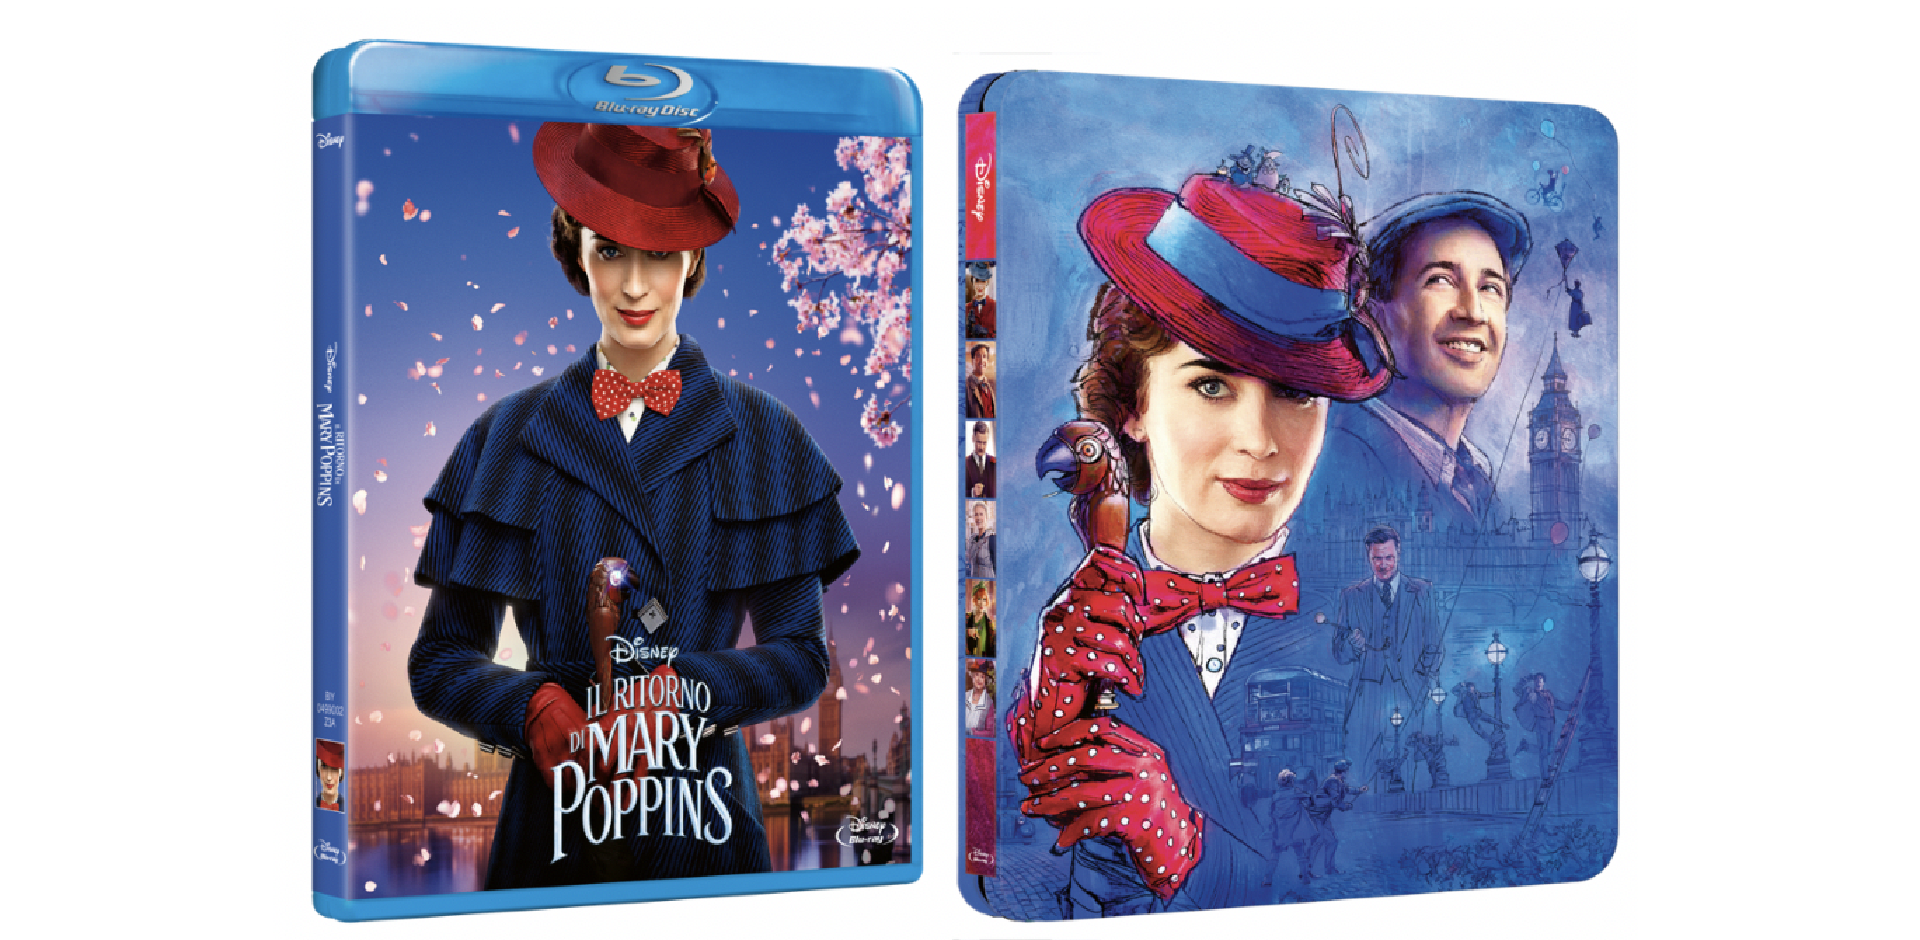 Il ritorno di Mary Poppins disponibile in Home Video dal 17 aprile